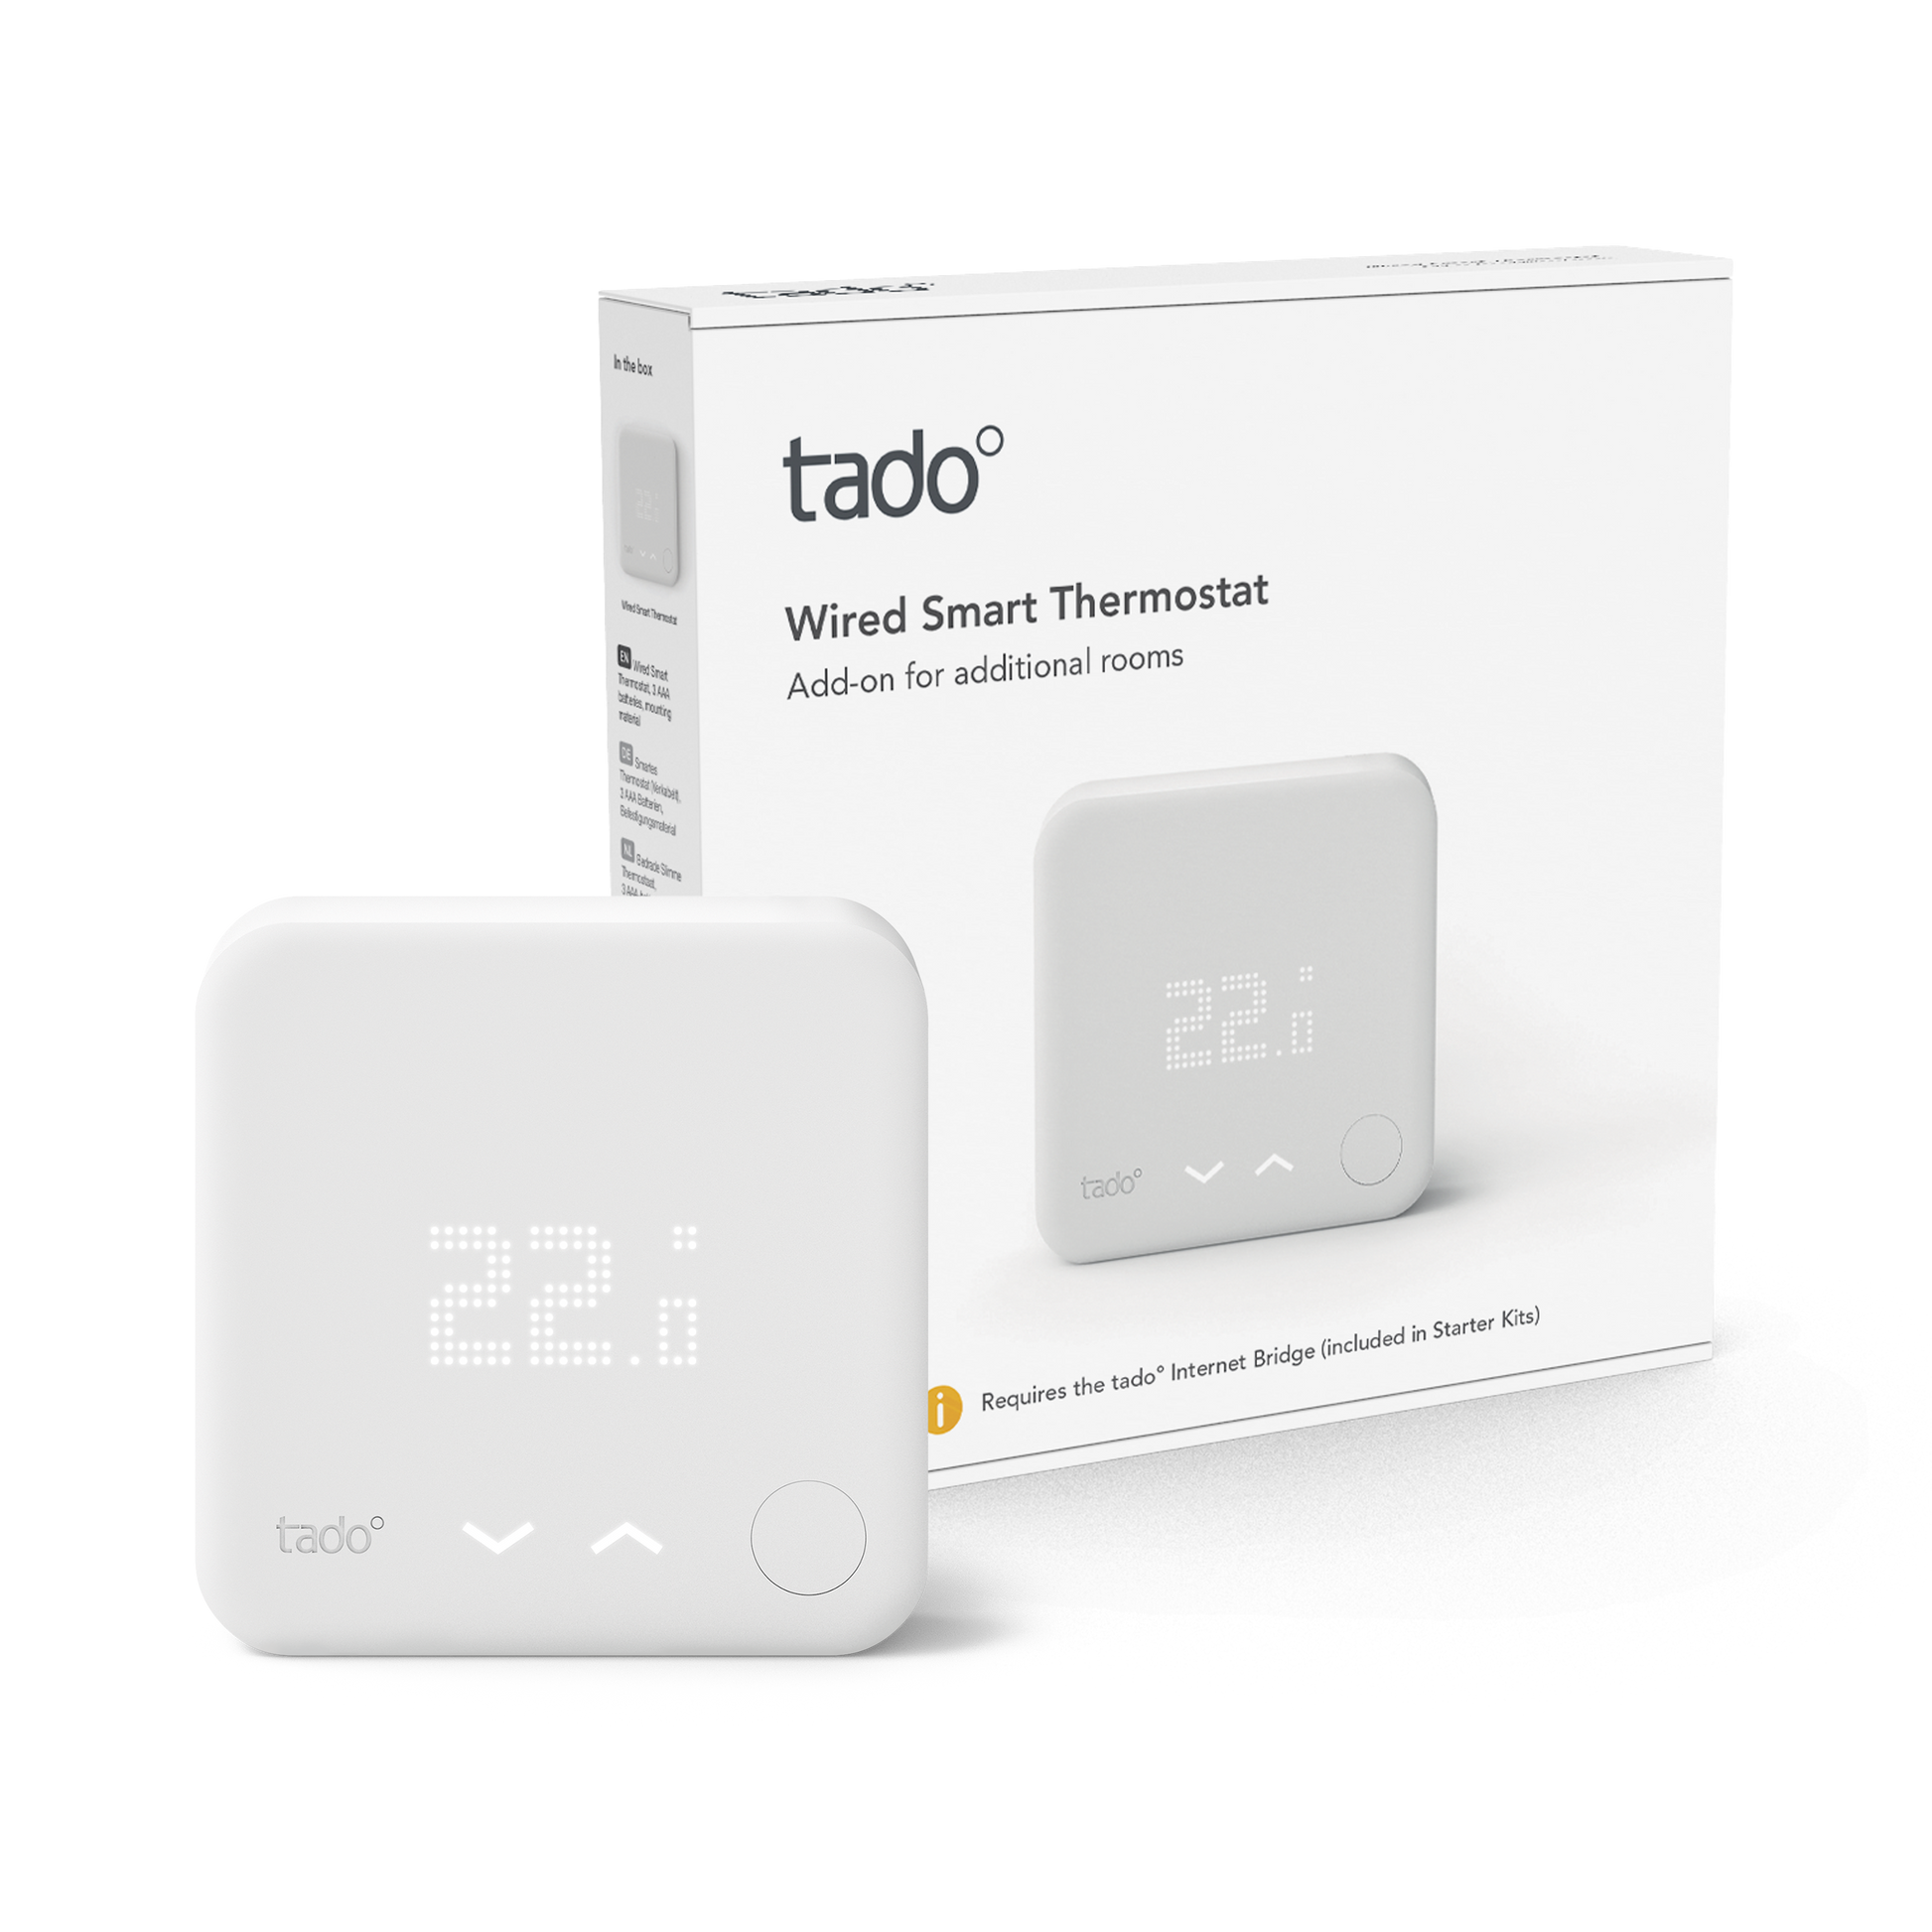 Soporte para termostato Tado - Termostato Inteligente - LDLC